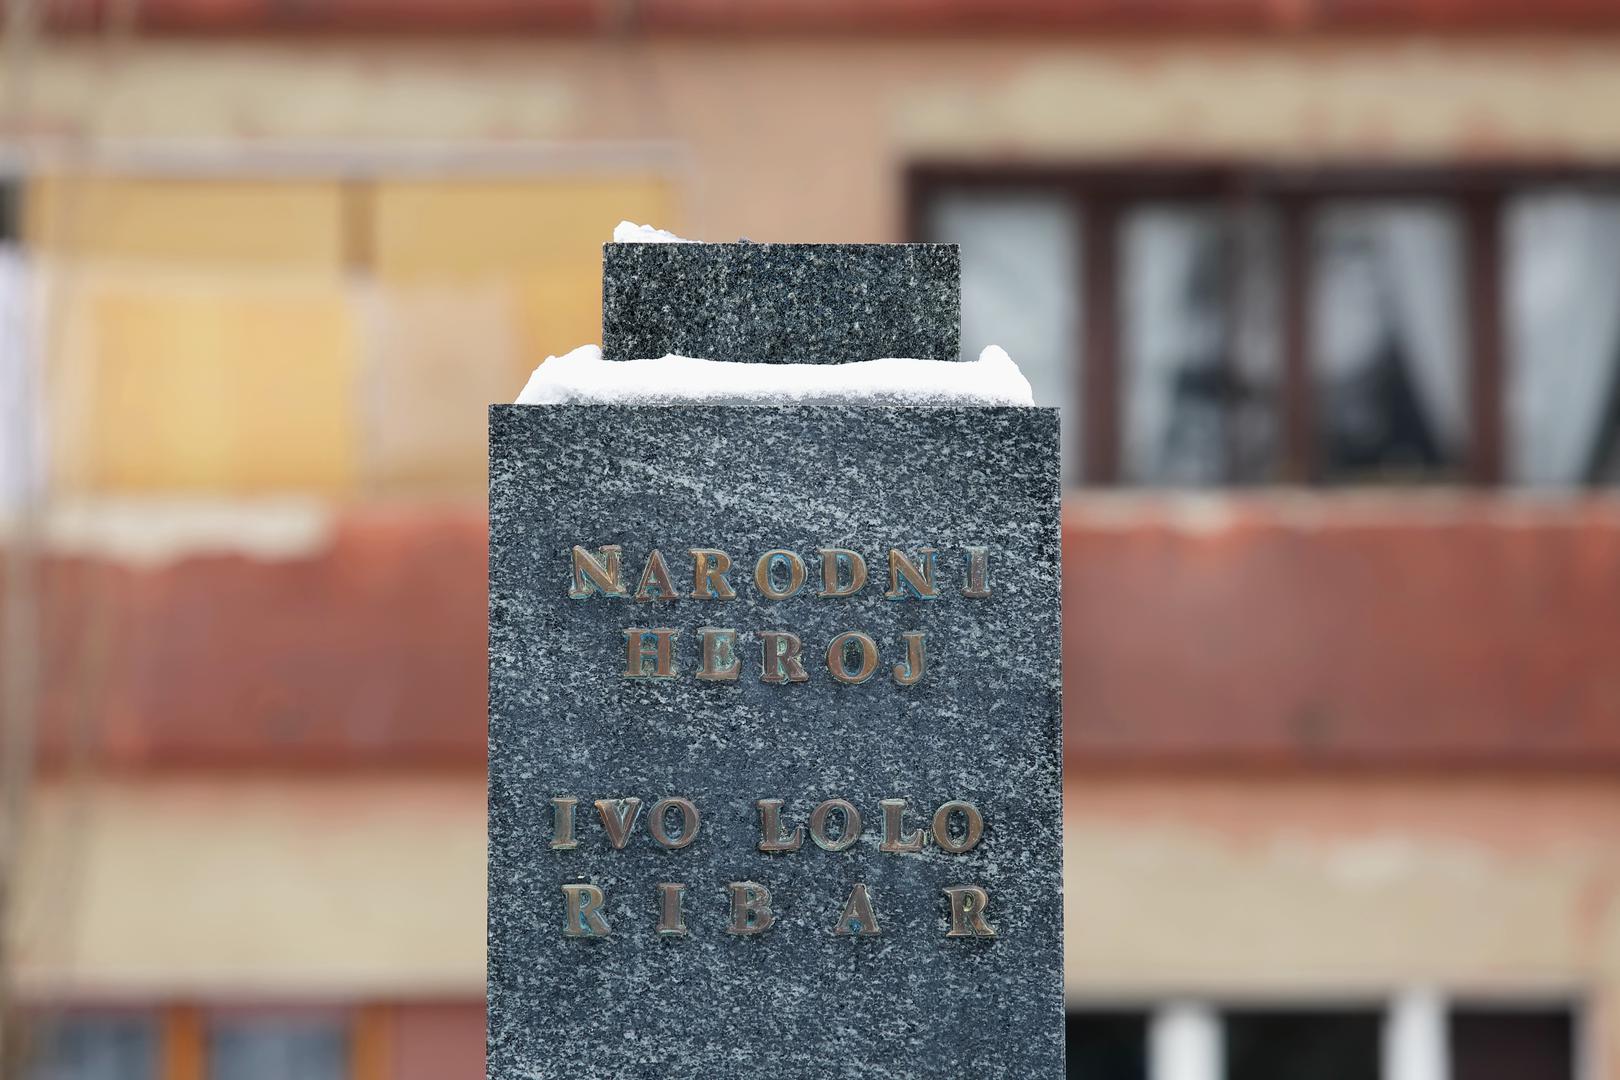 Bista partizanskoga narodnog heroja Ive Lole Ribara ukradena je u nedjelju s postolja spomenika iz parka u Prilazu baruna Filipovića u Zagrebu, potvrdila je Policijska uprava zagrebačka.